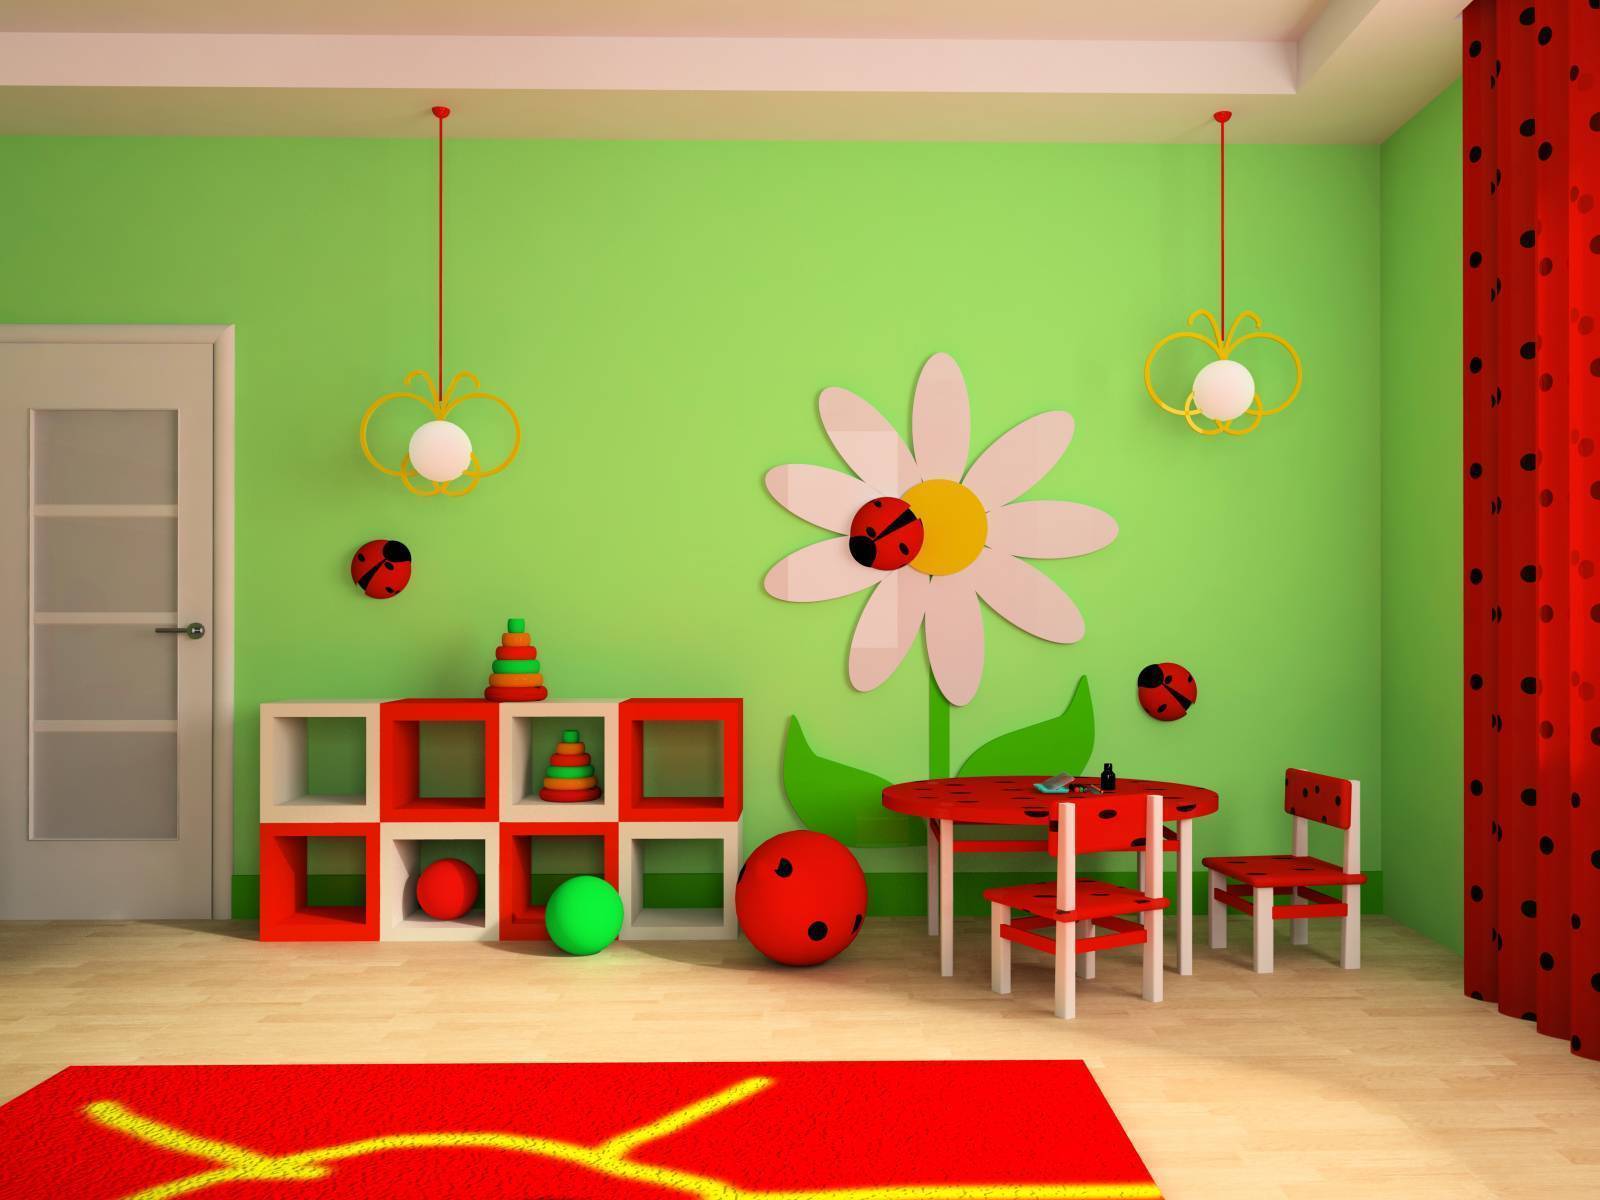 Как украсить стену в детской комнате: цвета, декор, украшения, трафареты, лучшие идеи